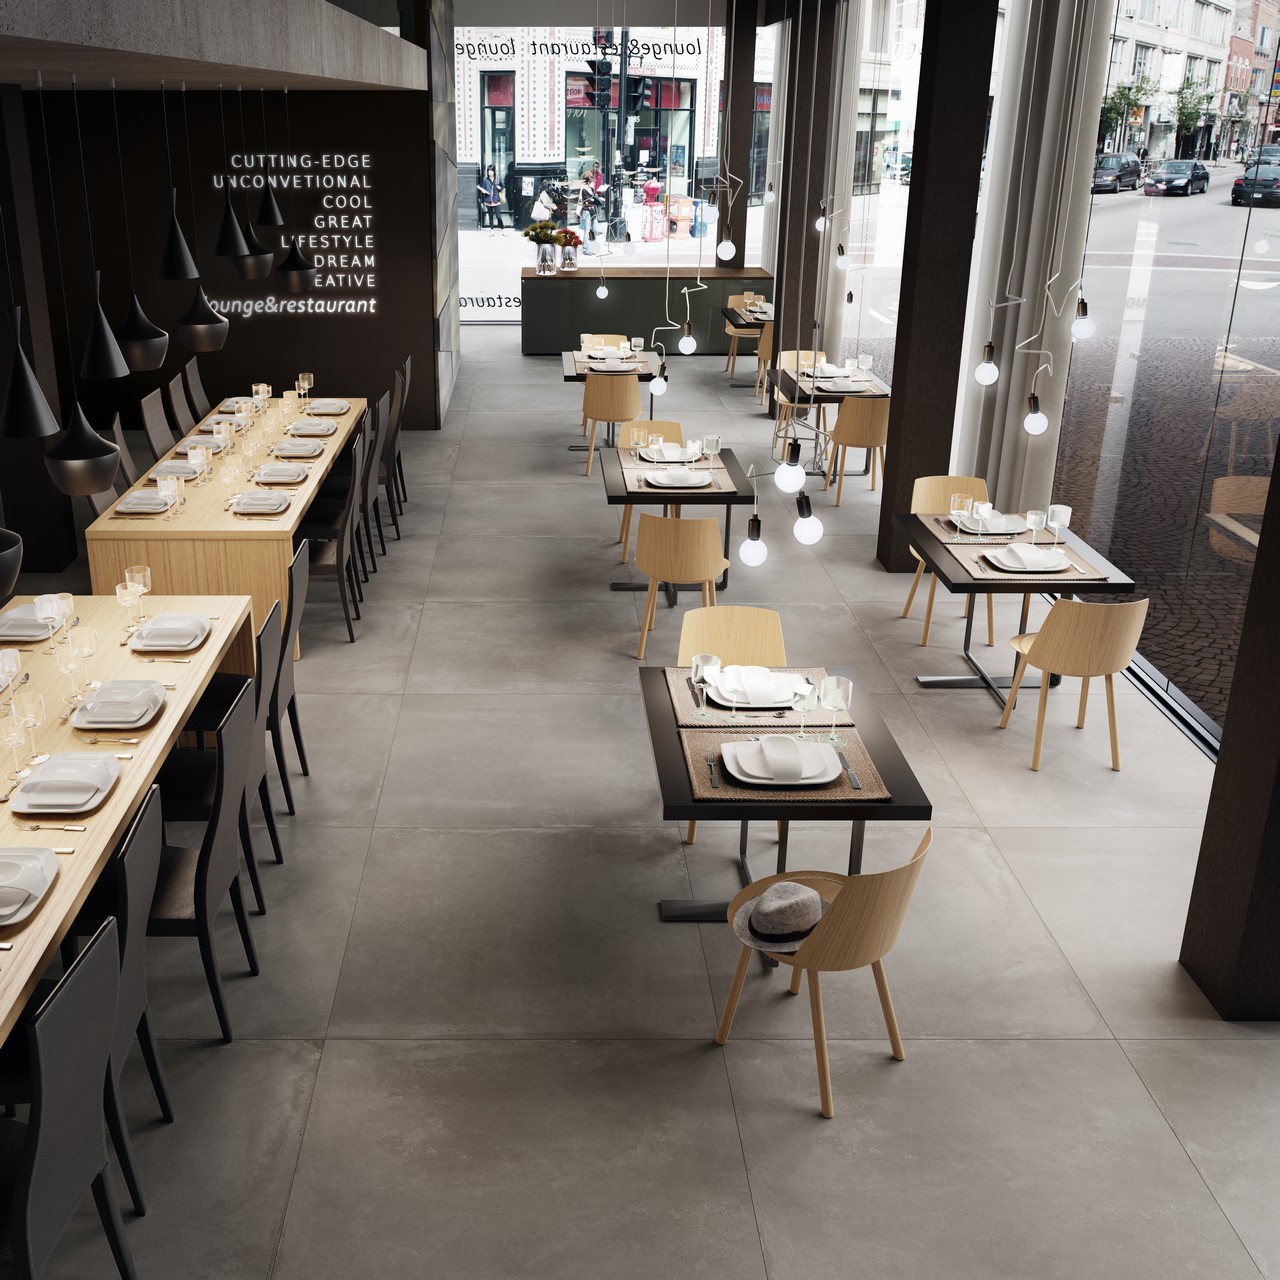 Terrasse de bar-restaurant moderne avec sol imitation béton pour une touche industrielle. - Inspirations Iperceramica